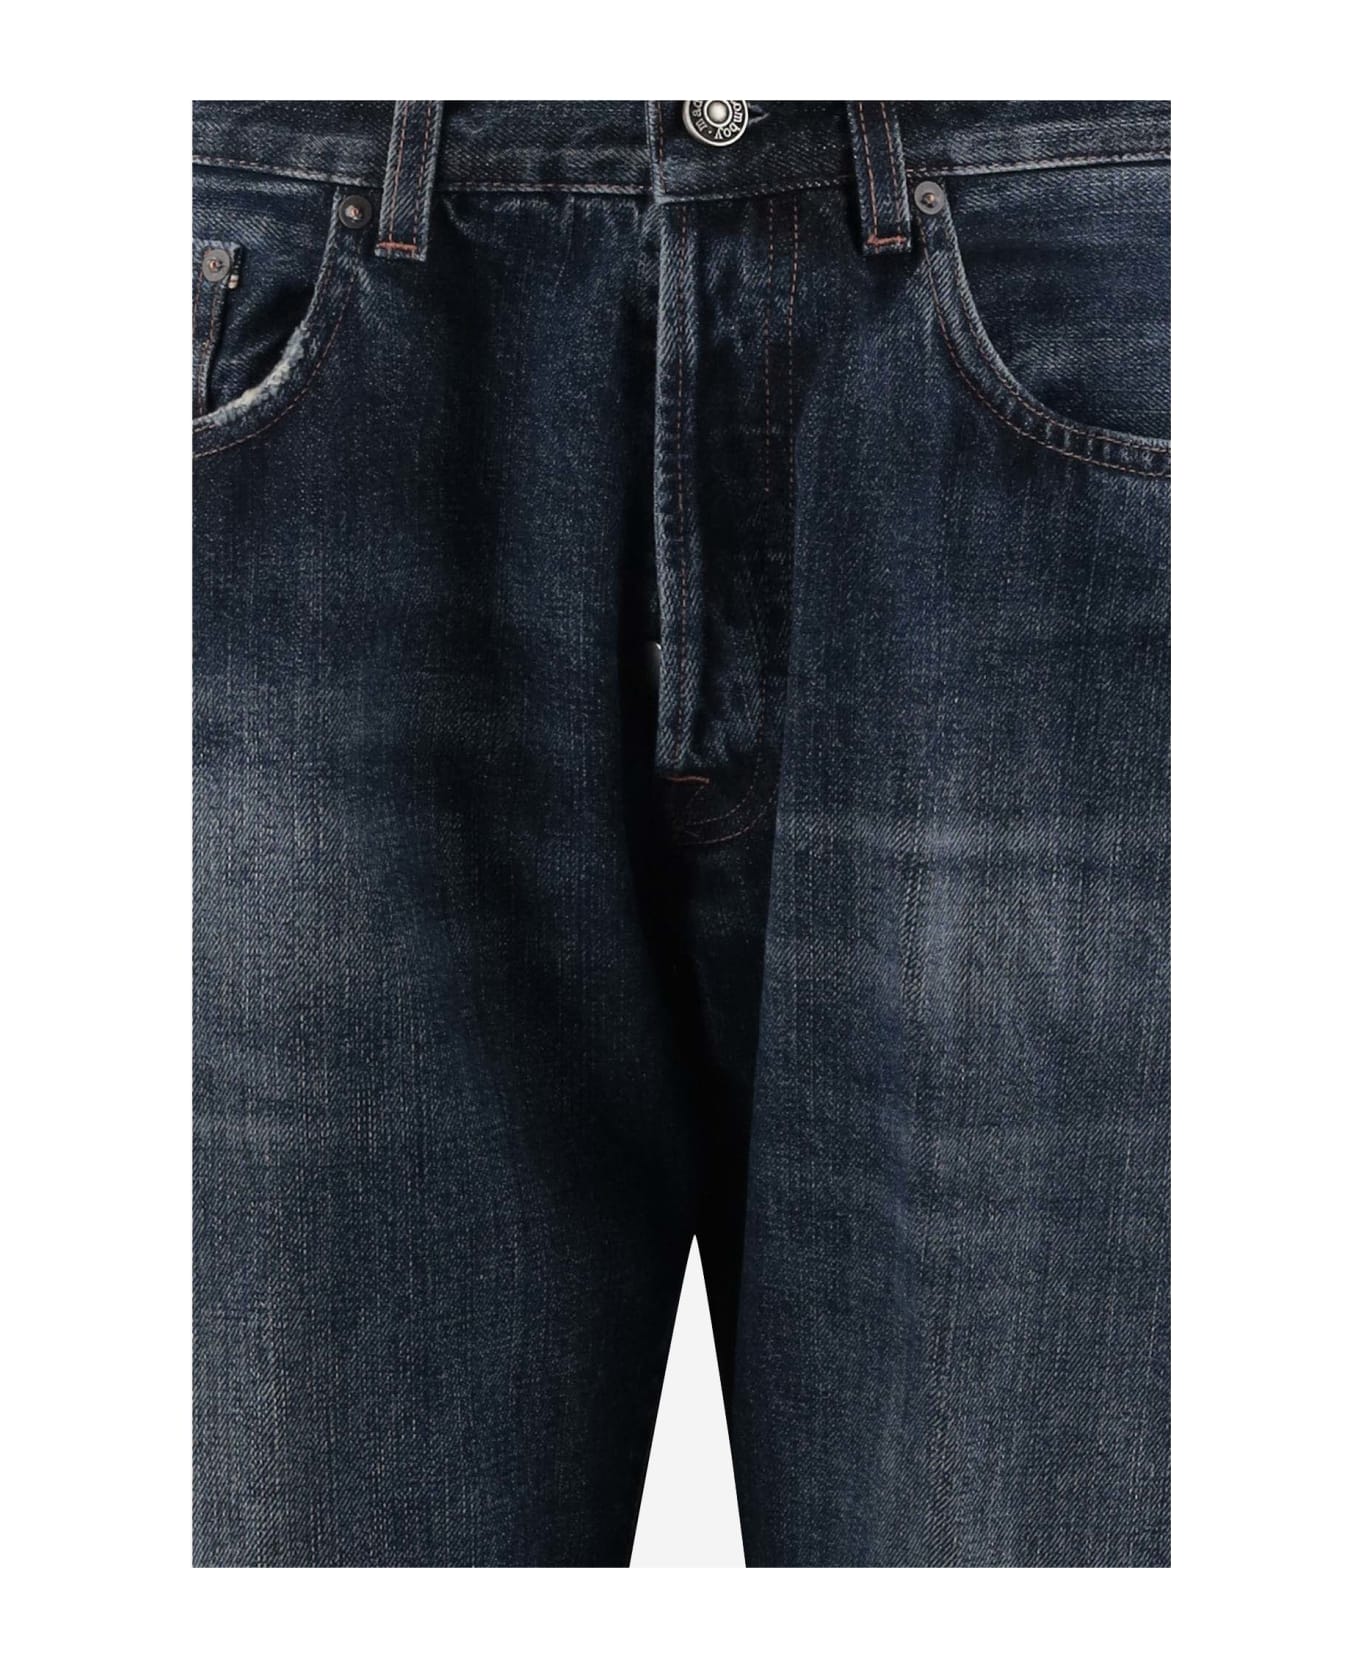 Made in Tomboy Cotton Denim Jeans - Denim